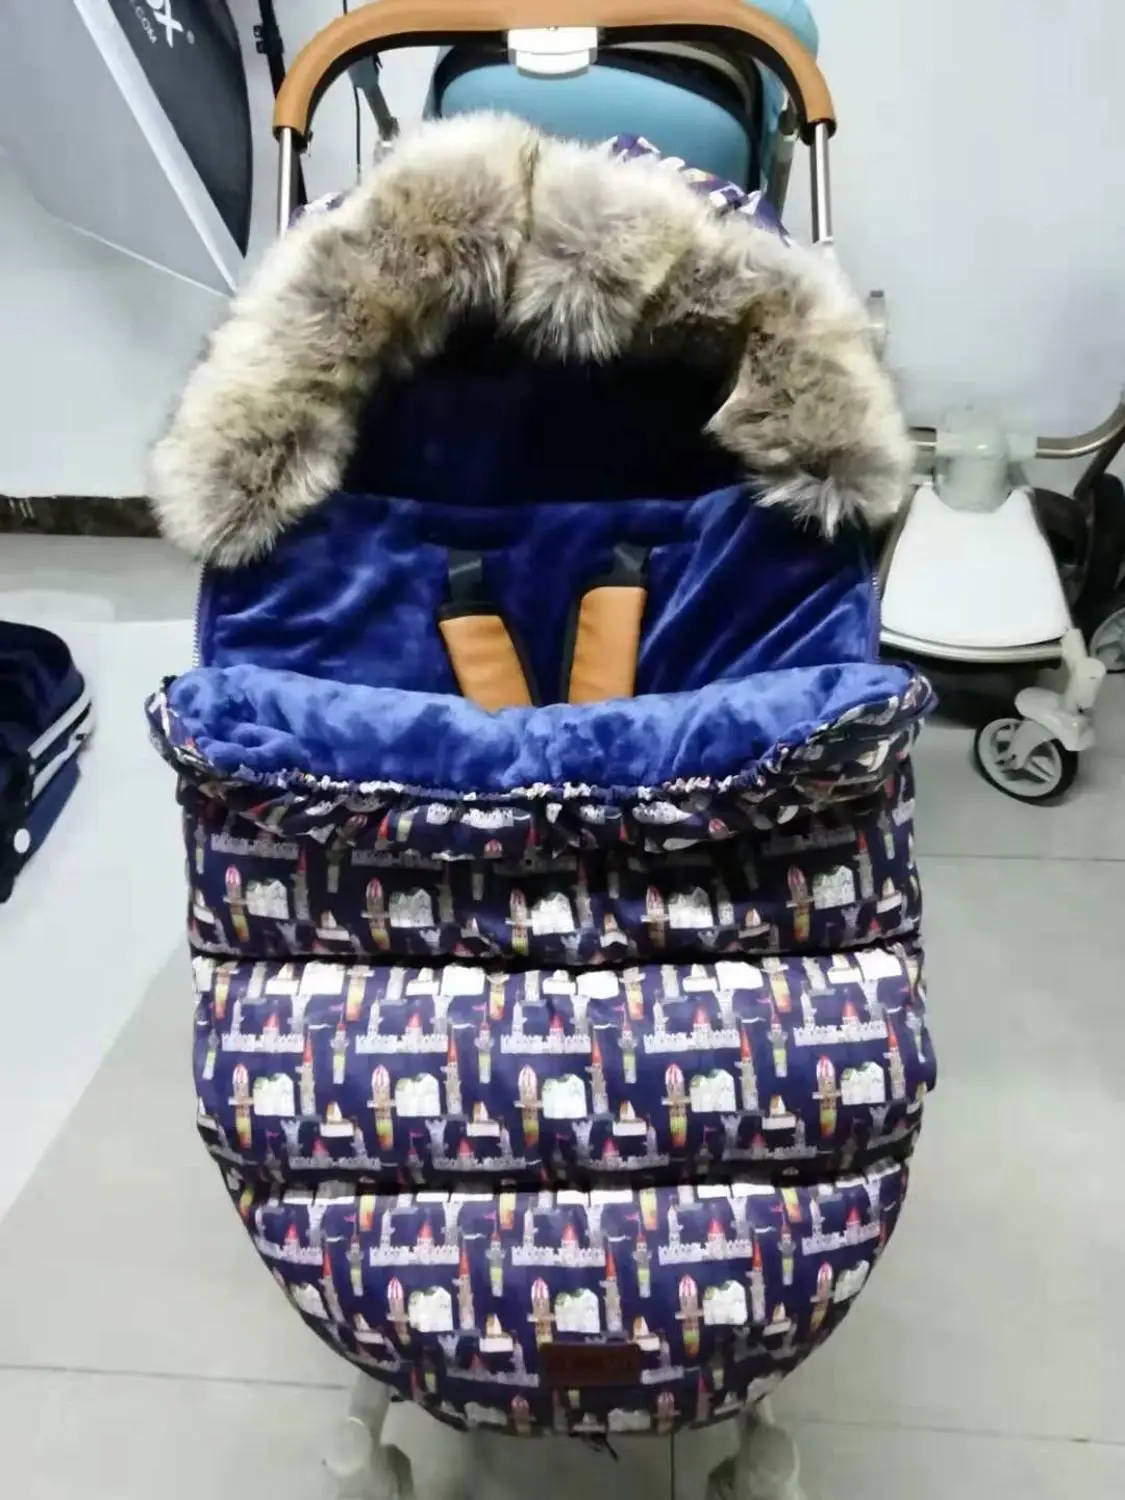 Детская зимняя Прогулочная ДЕТСКАЯ КОЛЯСКА с конвертом, утолщенная меховая прогулочная коляска ножная муфта для инвалидных колясок, теплые спальные мешки для новорожденных, конверт, спальные мешки